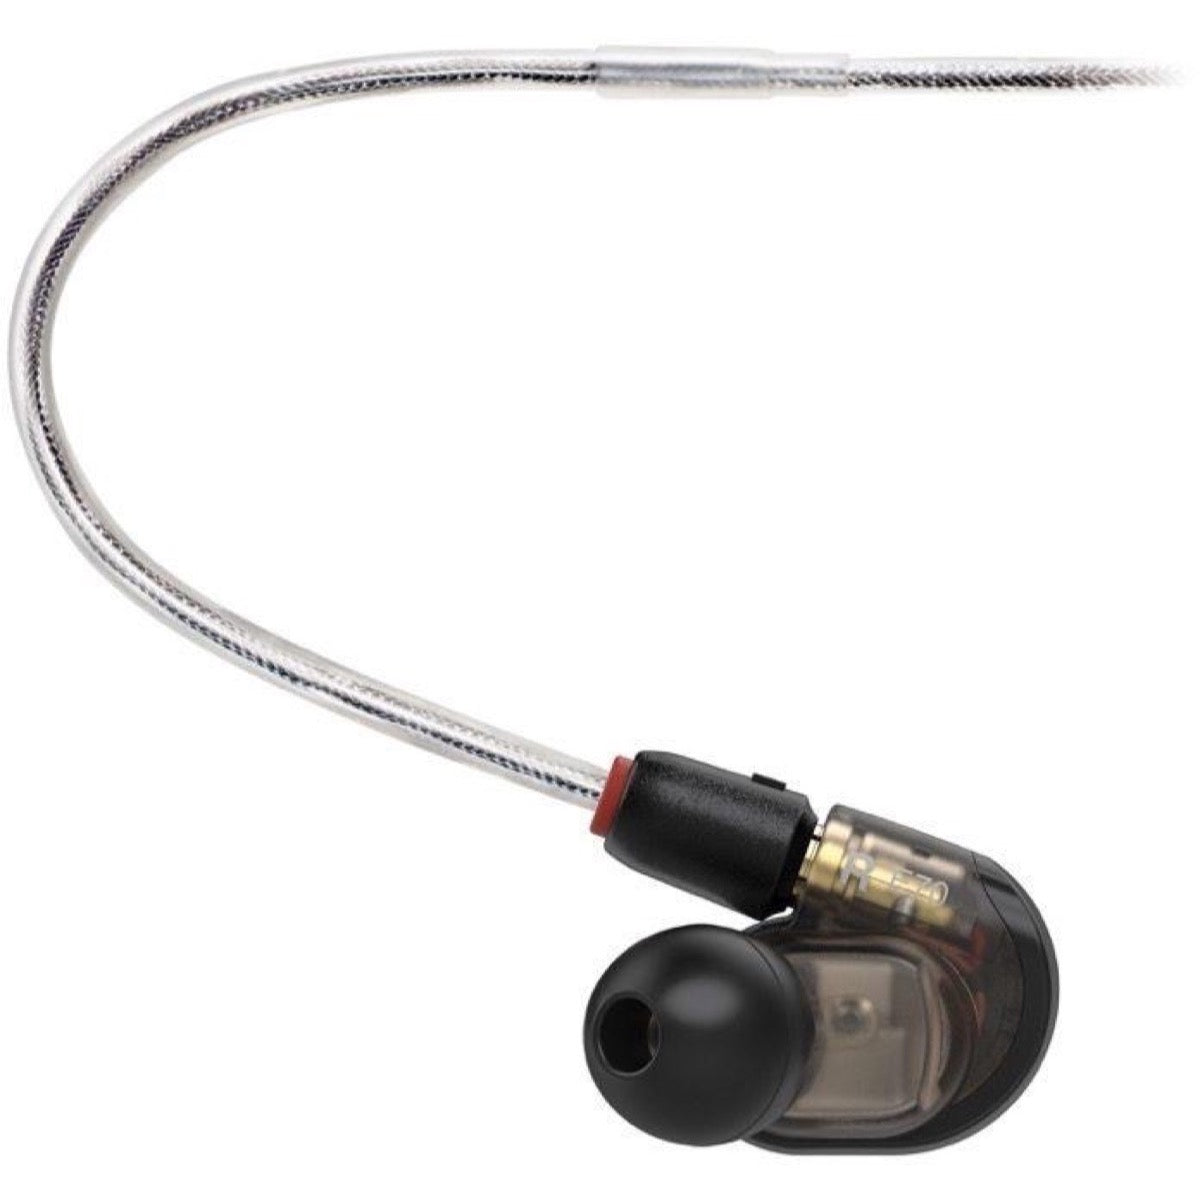 Audio-Technica ATH-E70 Professional In-Ear Monitor – Same Day Music